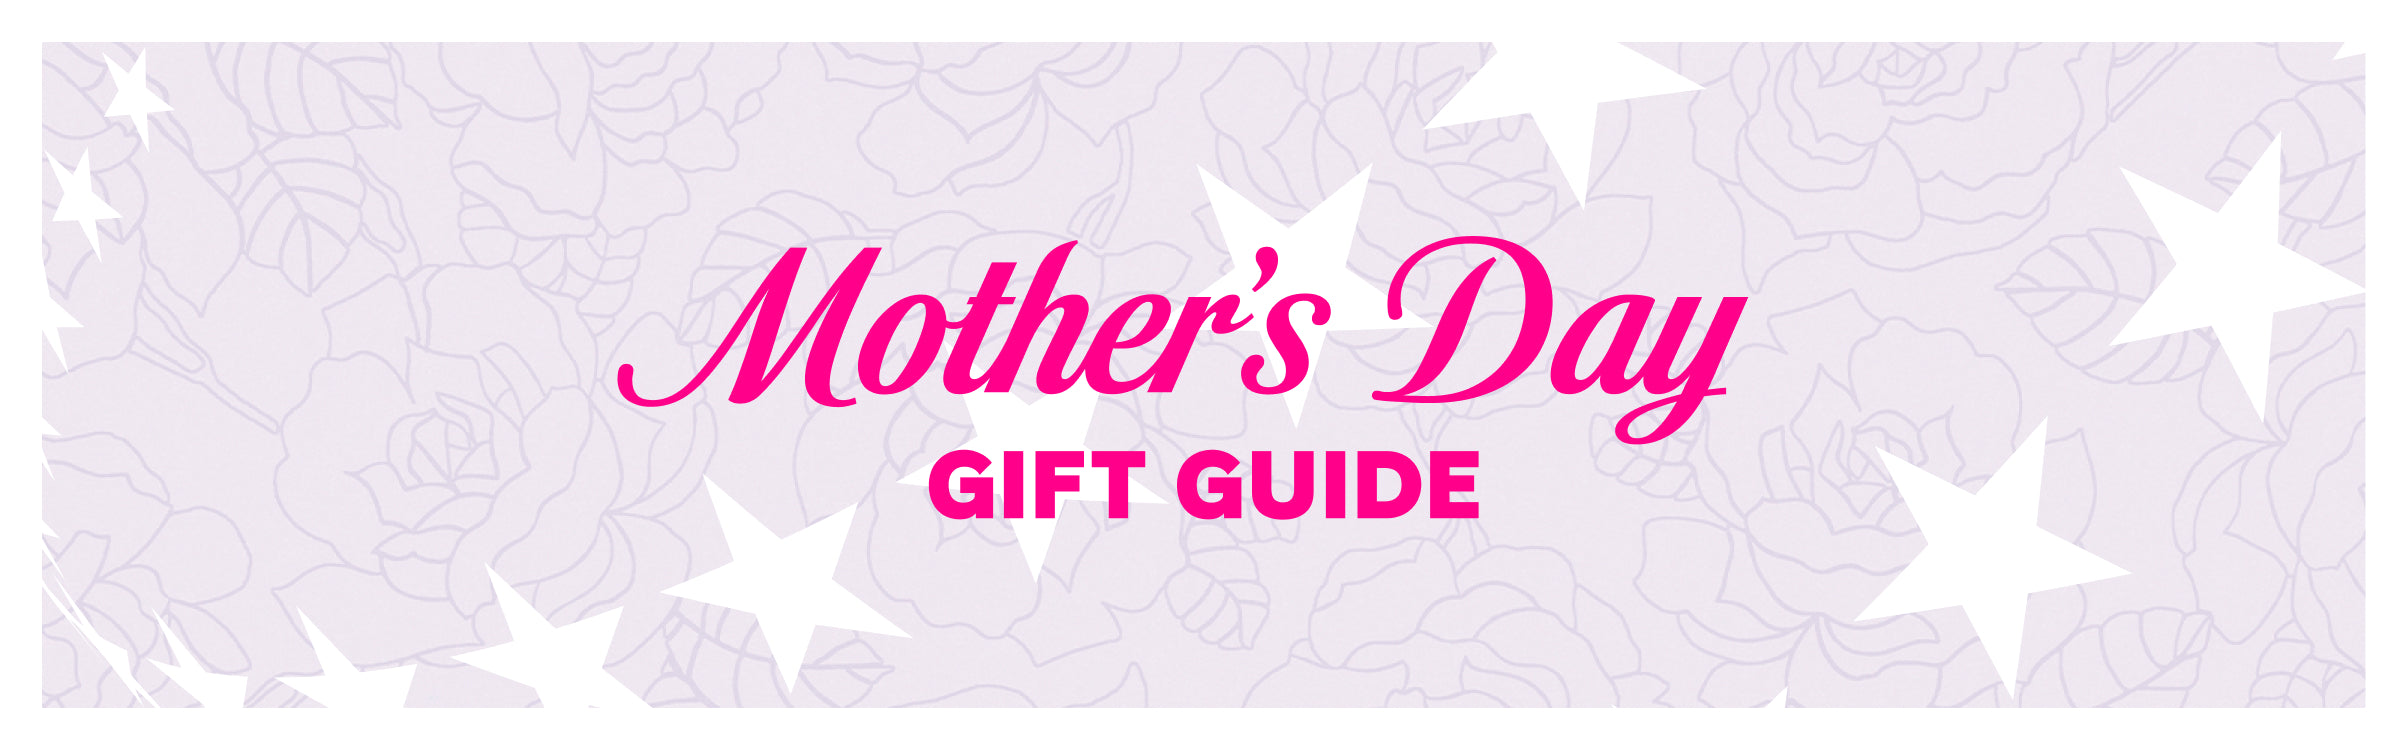 premium-banner-día de la madre guía de regalos